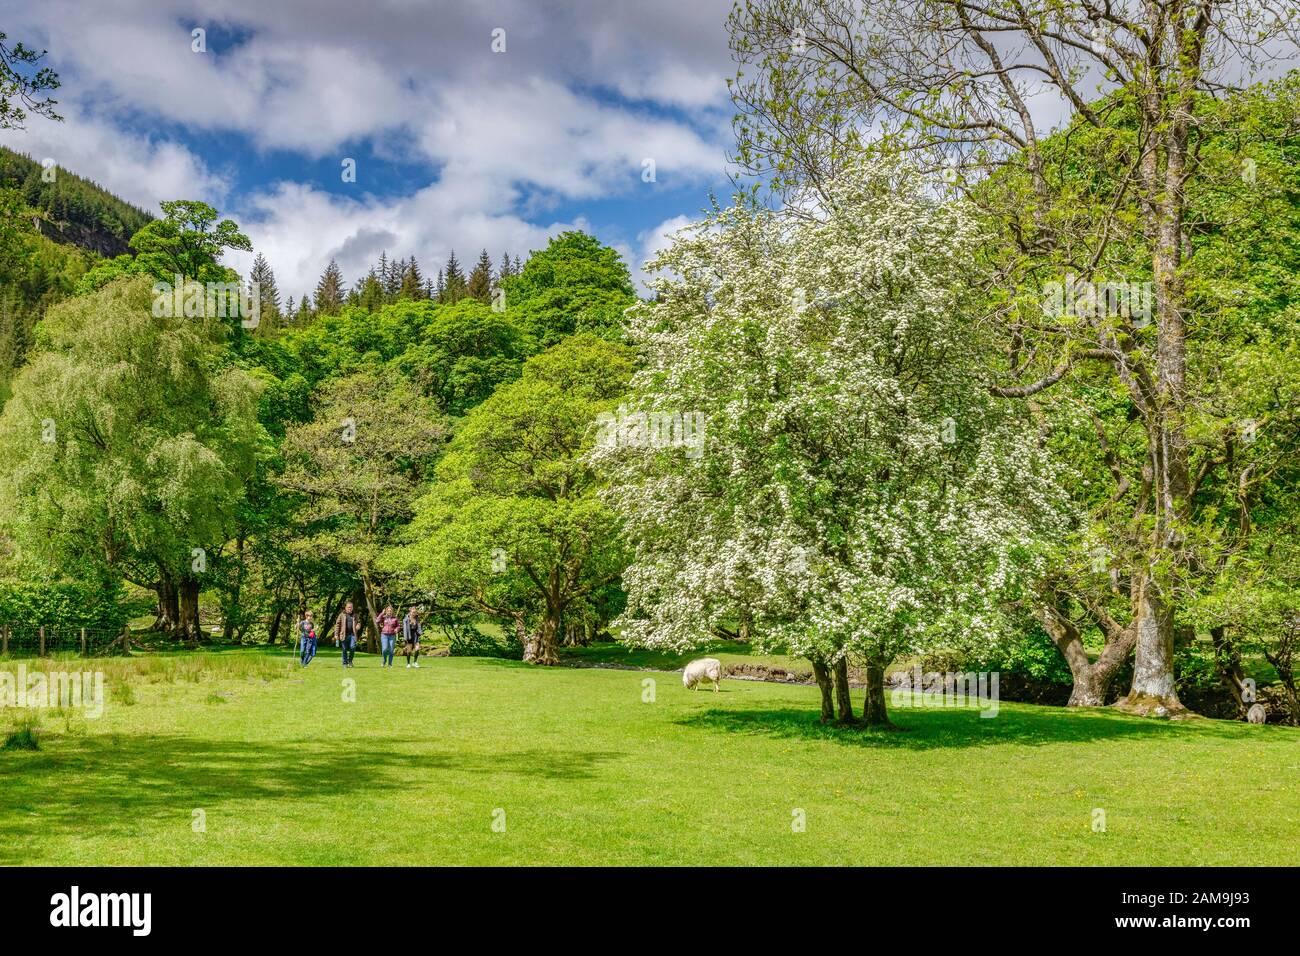 28 maggio 2019: Lago Vyrnwy, Powys, Galles - Famiglia fuori per una passeggiata di campagna tra gli alberi vicino al fiume Eiddew sopra il lago Vyrnwy. Foto Stock